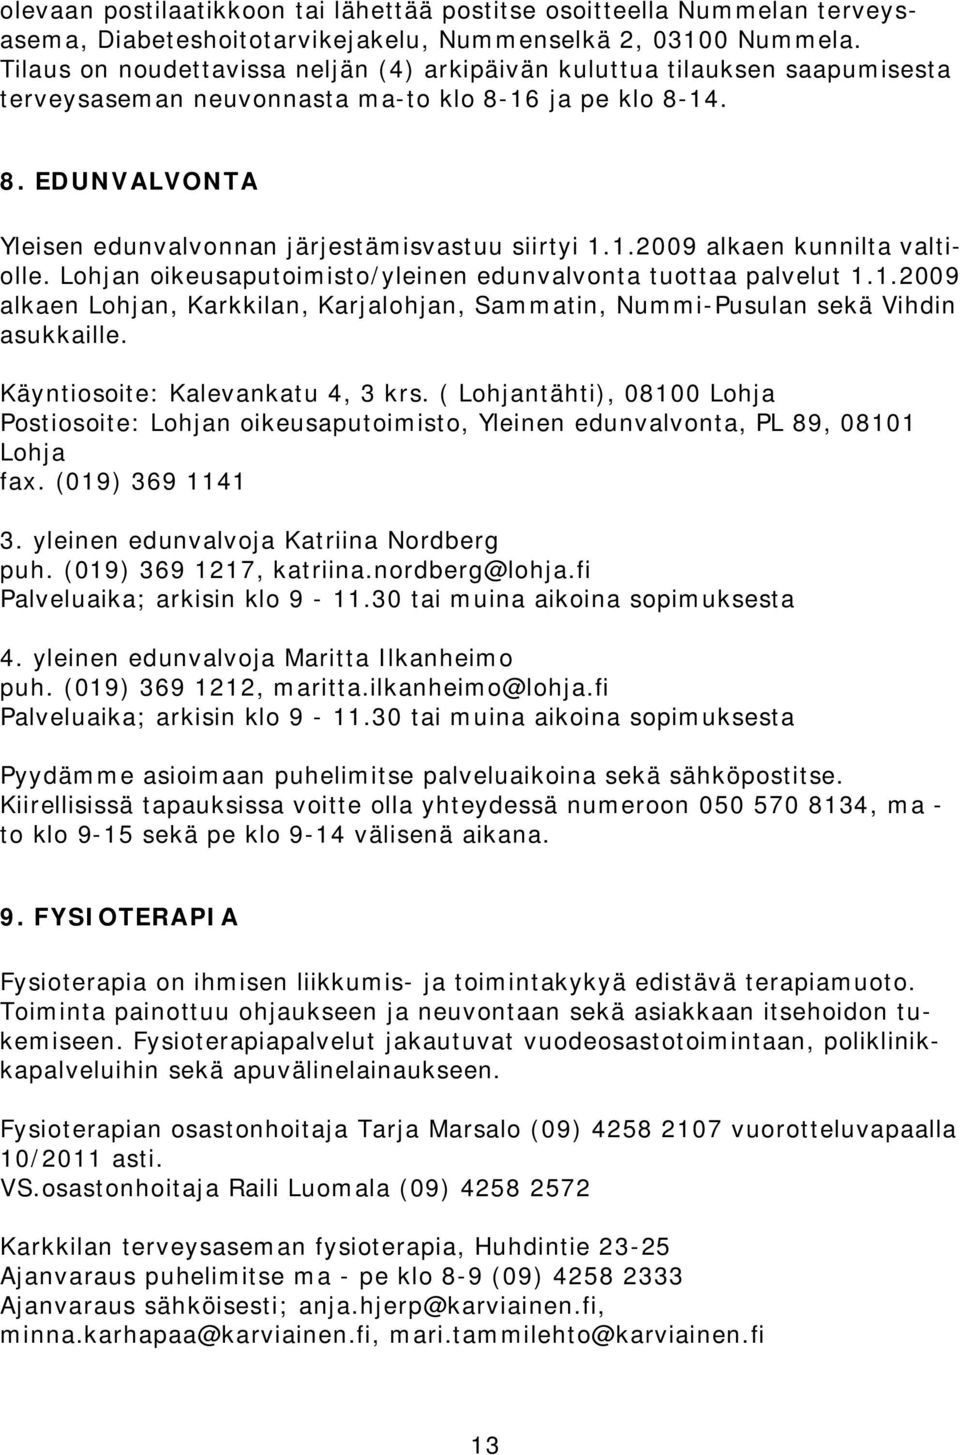 1.2009 alkaen kunnilta valtiolle. Lohjan oikeusaputoimisto/yleinen edunvalvonta tuottaa palvelut 1.1.2009 alkaen Lohjan, Karkkilan, Karjalohjan, Sammatin, Nummi-Pusulan sekä Vihdin asukkaille.